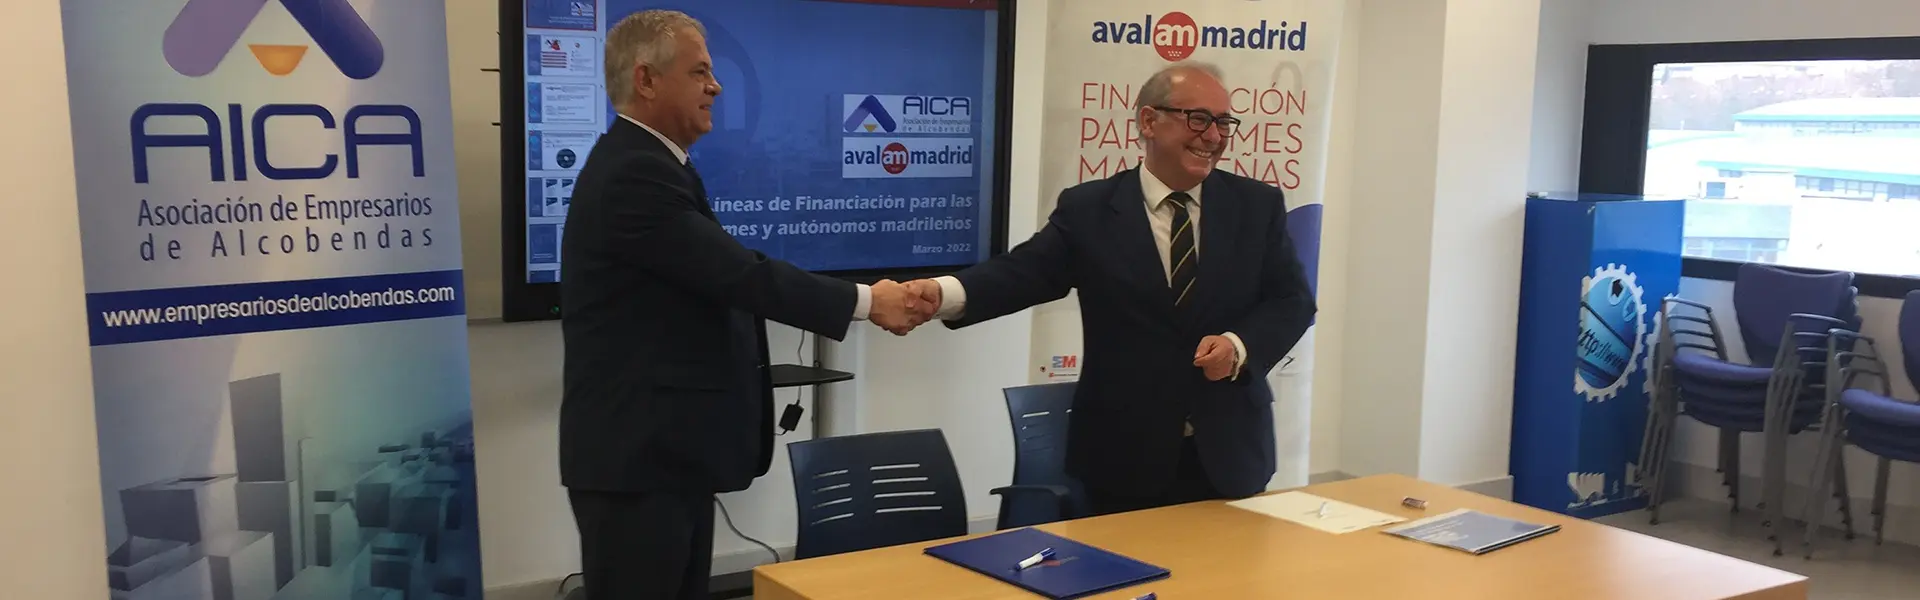 Avalmadrid y la Asociación de Empresarios de Alcobendas firman un acuerdo de colaboración para apoyar a las pymes madrileñas ultimas noticias